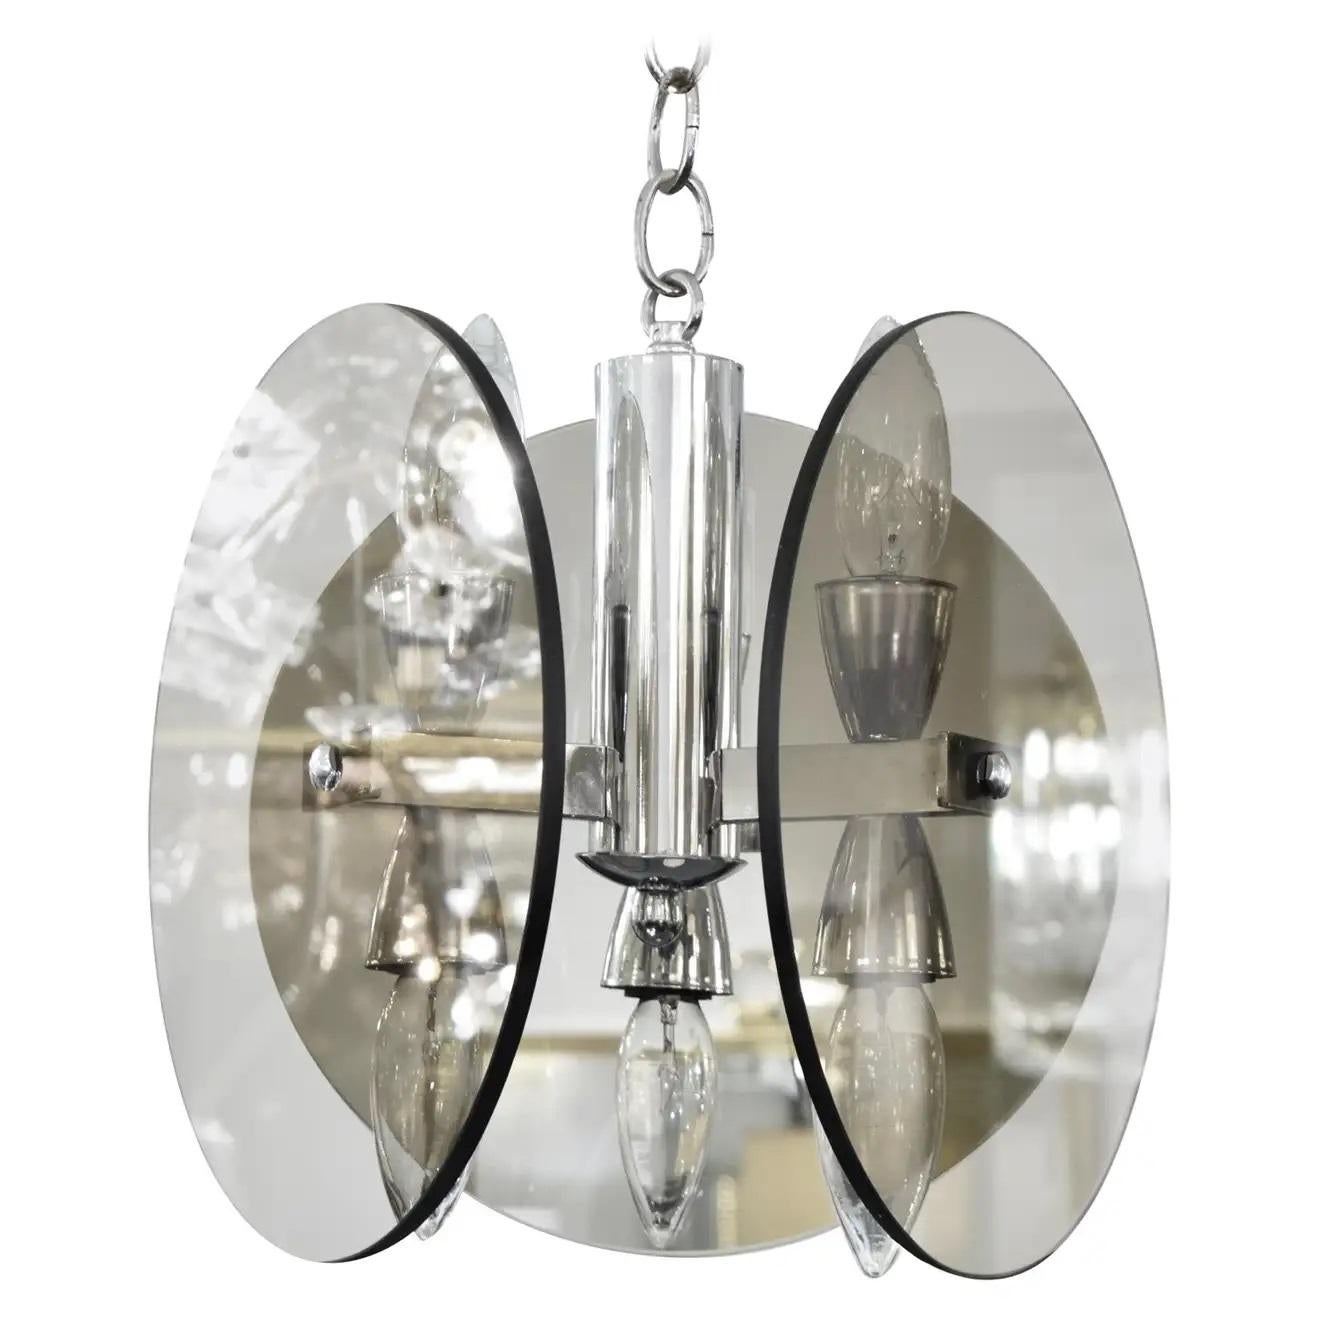 Sechs Glühbirnen-Kronleuchter aus Rauchglas im Stil von Fontana Arte, mit drei Glasscheiben, jede mit einem Durchmesser von 10